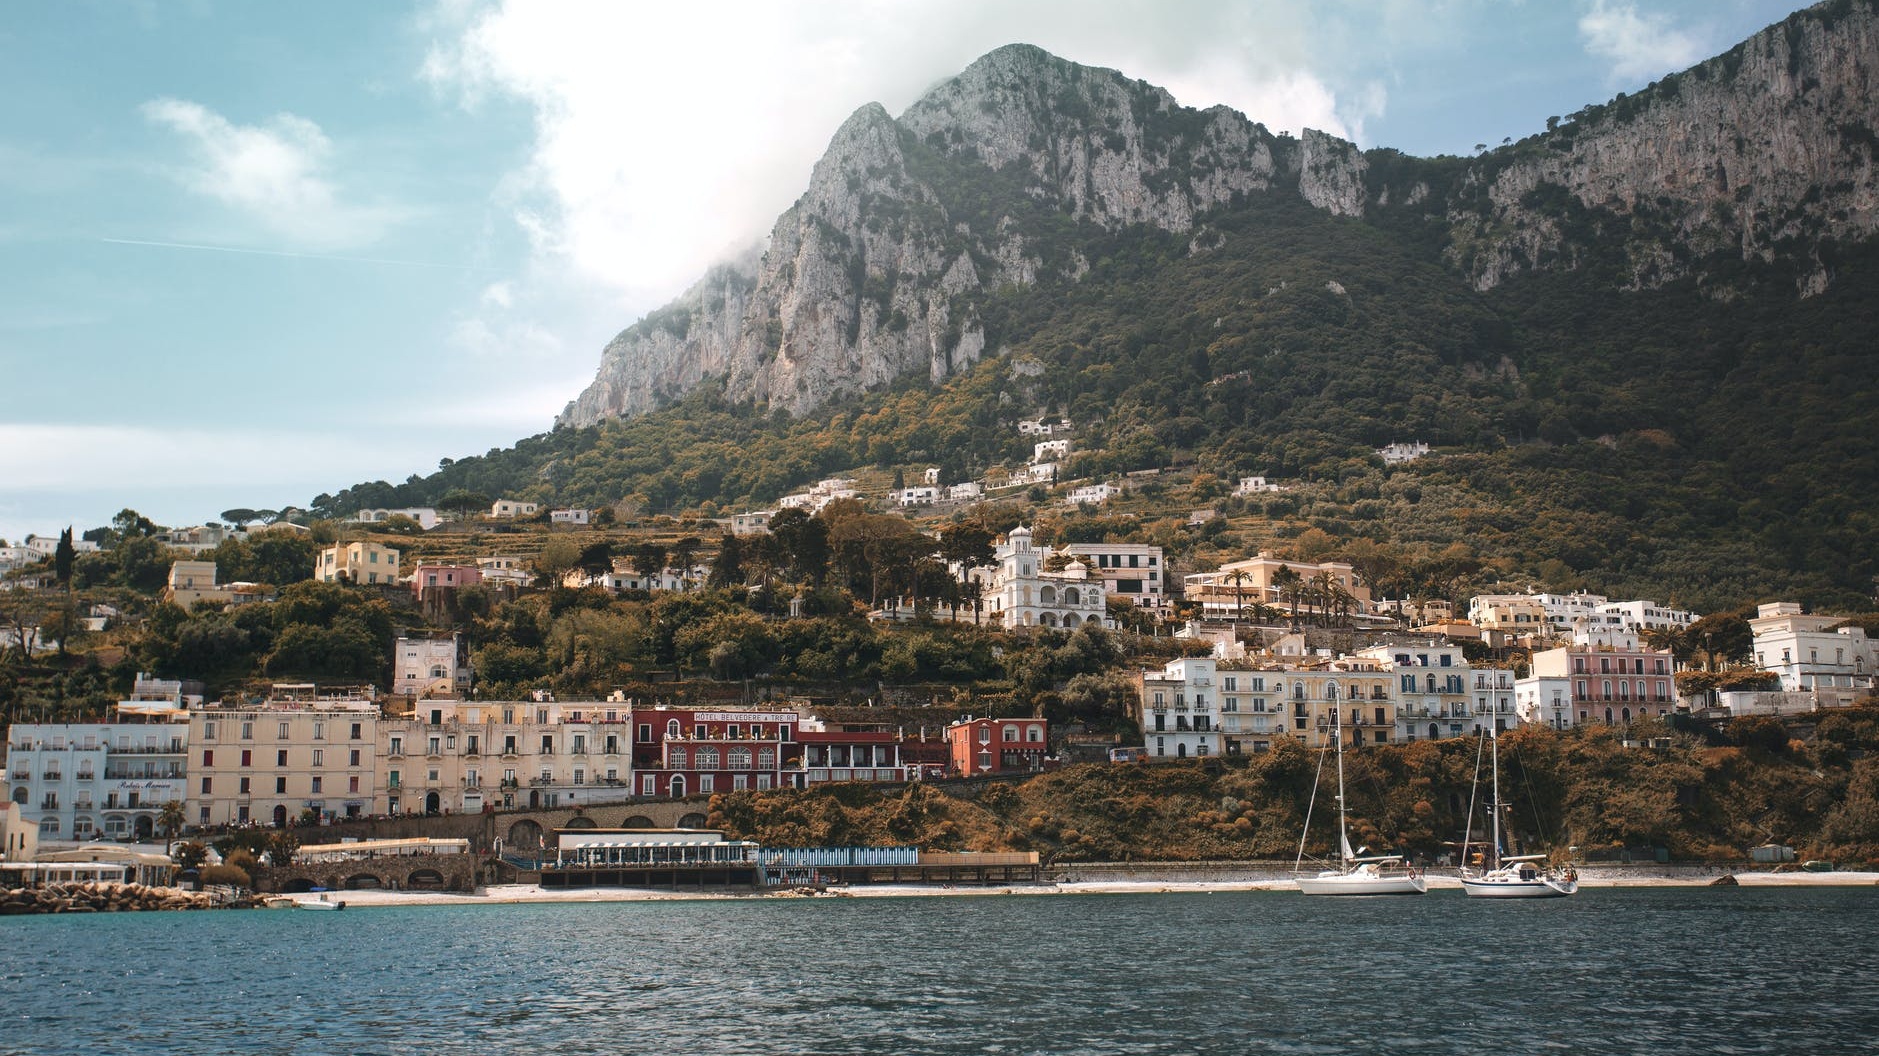 Allure of Capri